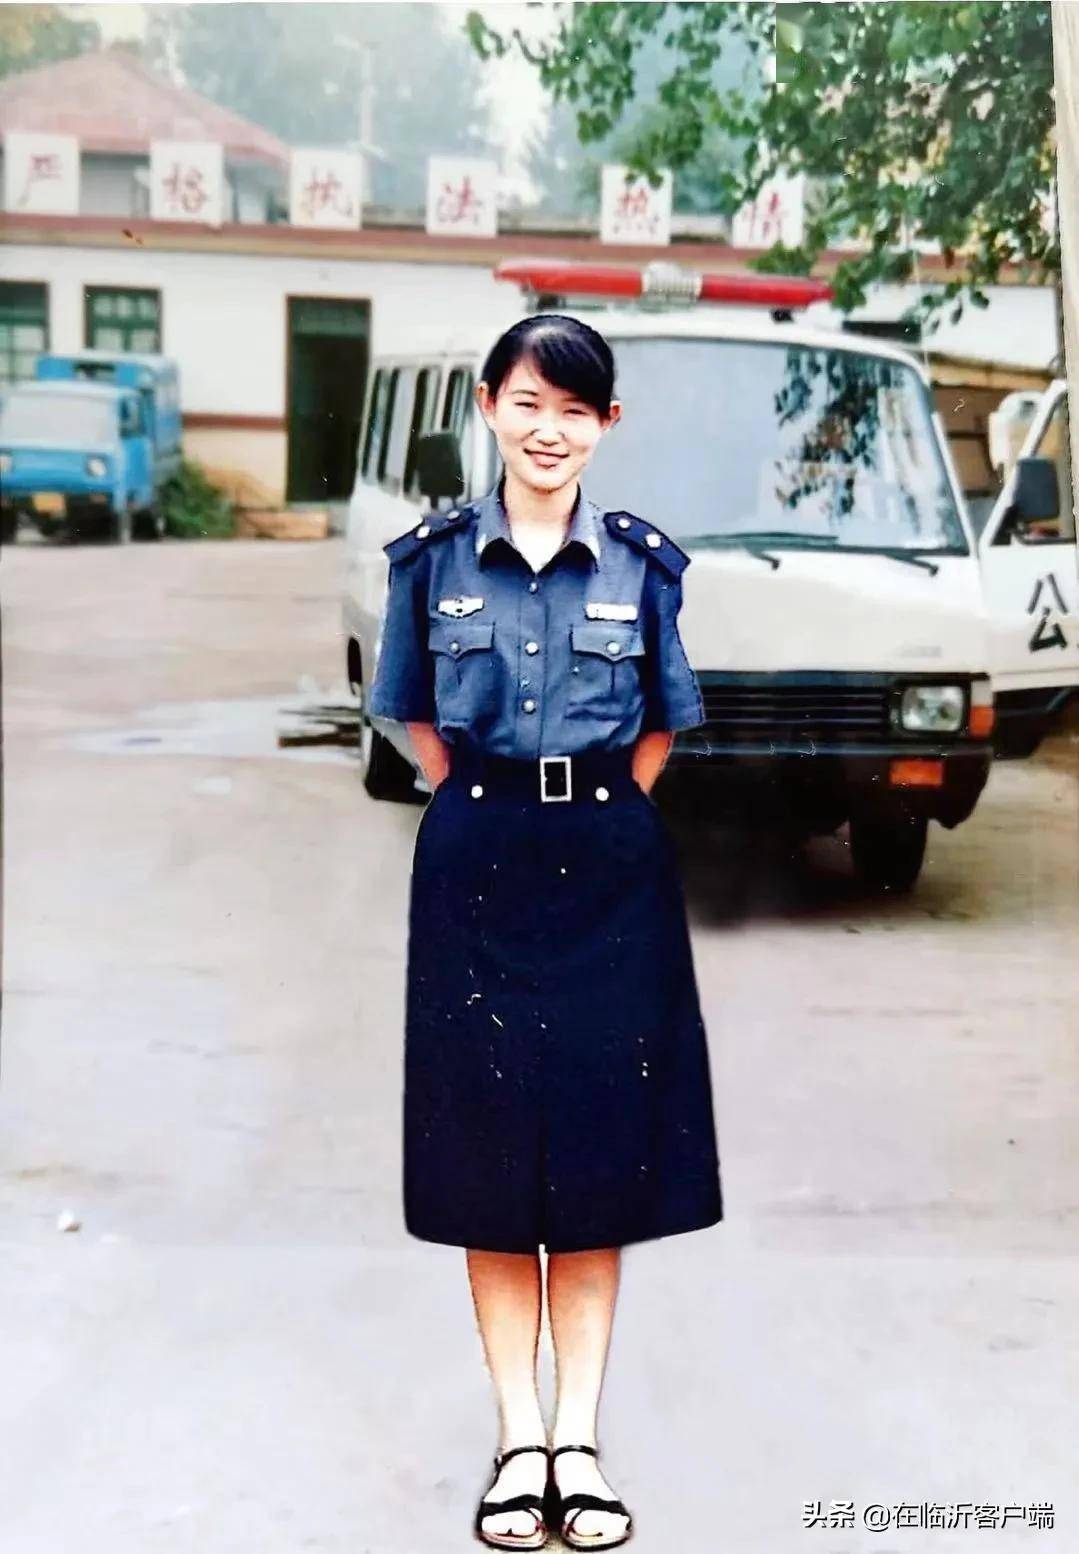 警服裙装着装标准图片图片